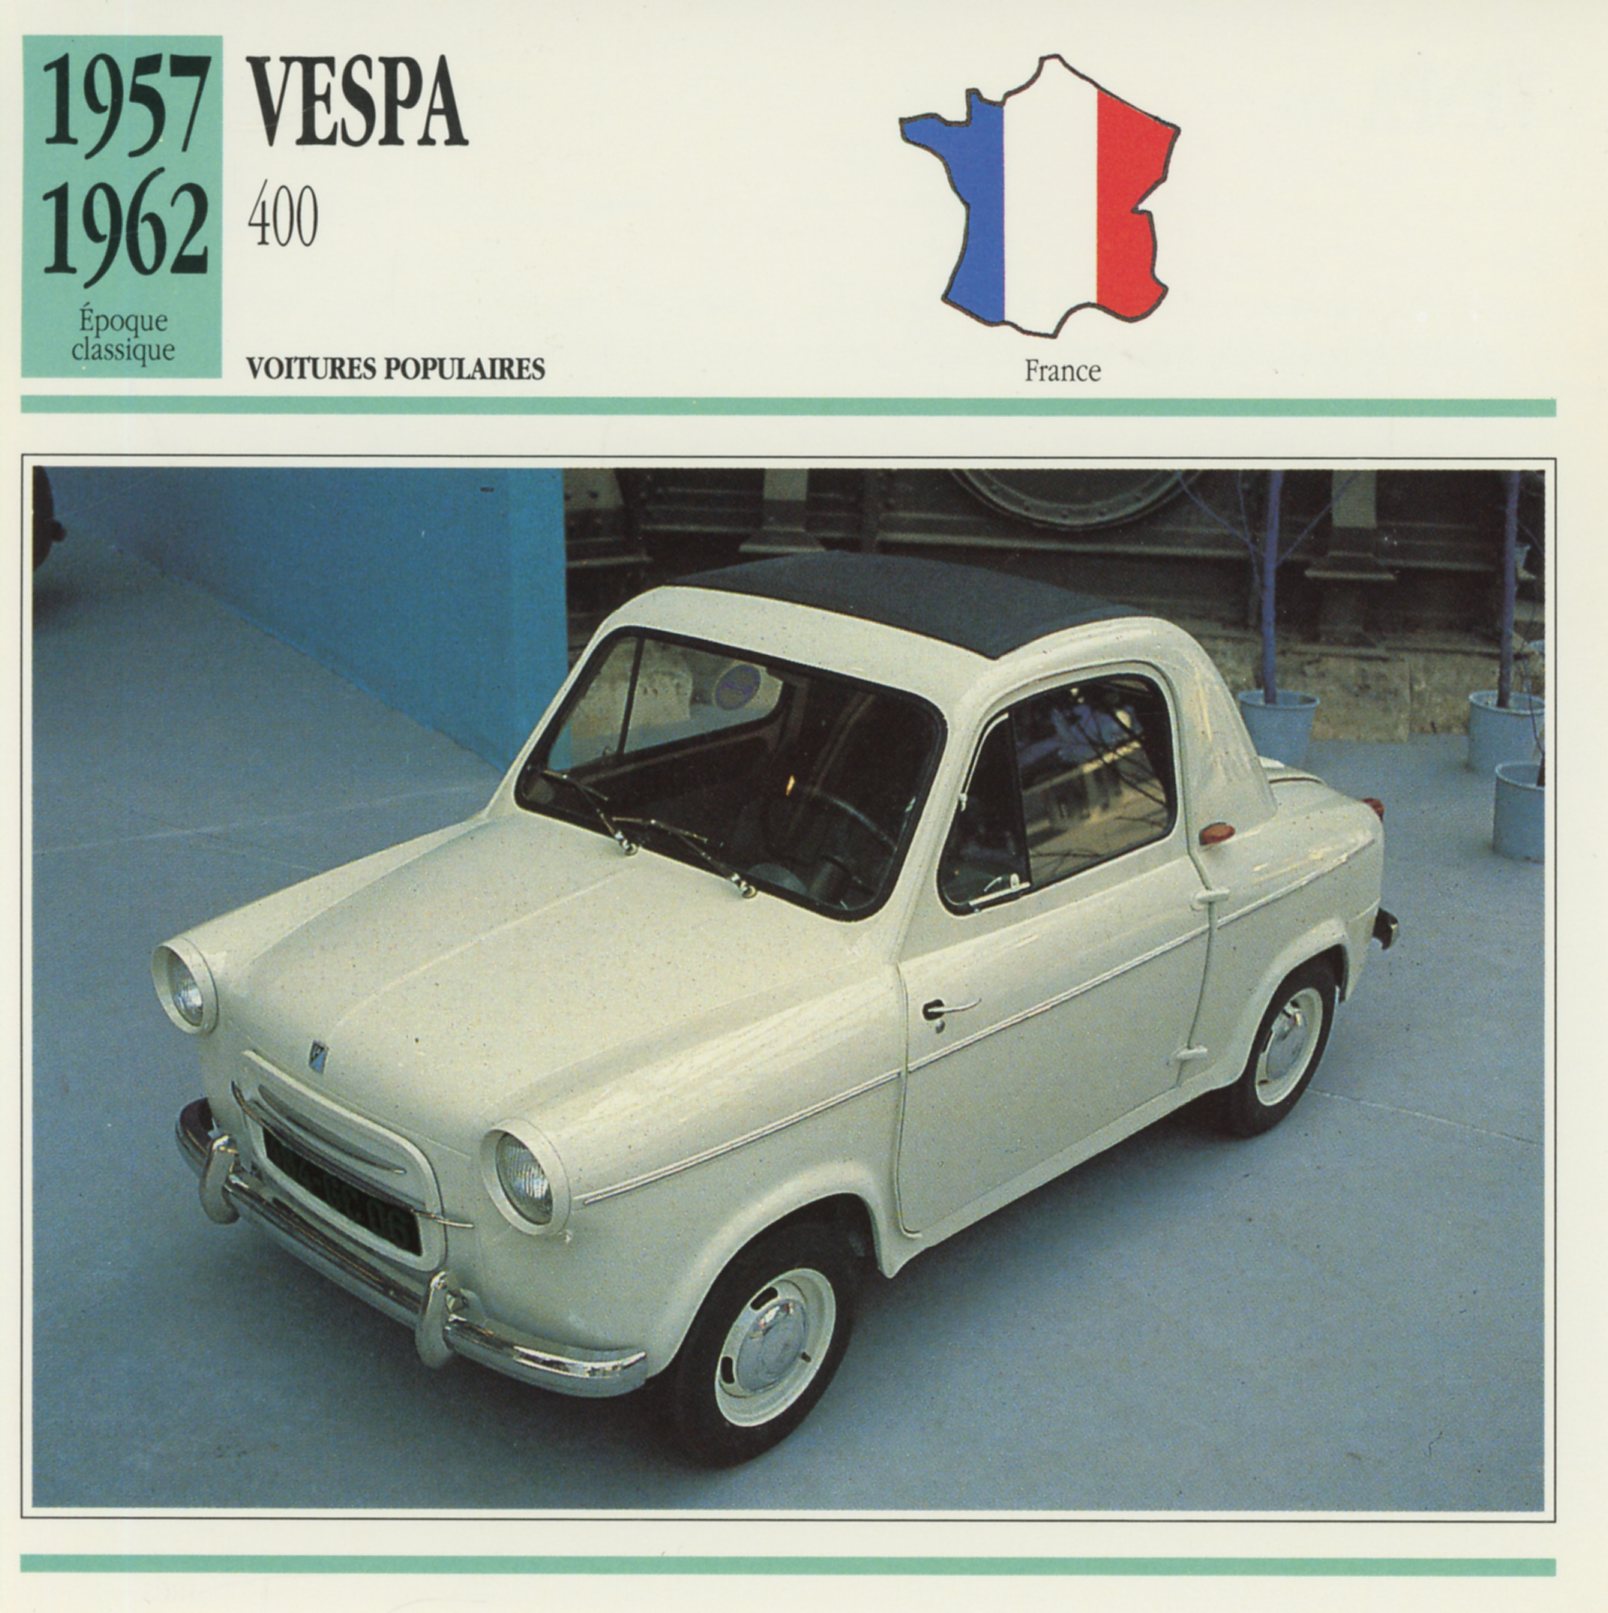 VESPA 400 1957 1962 - FICHE AUTO MICROCAR - CARS CARD